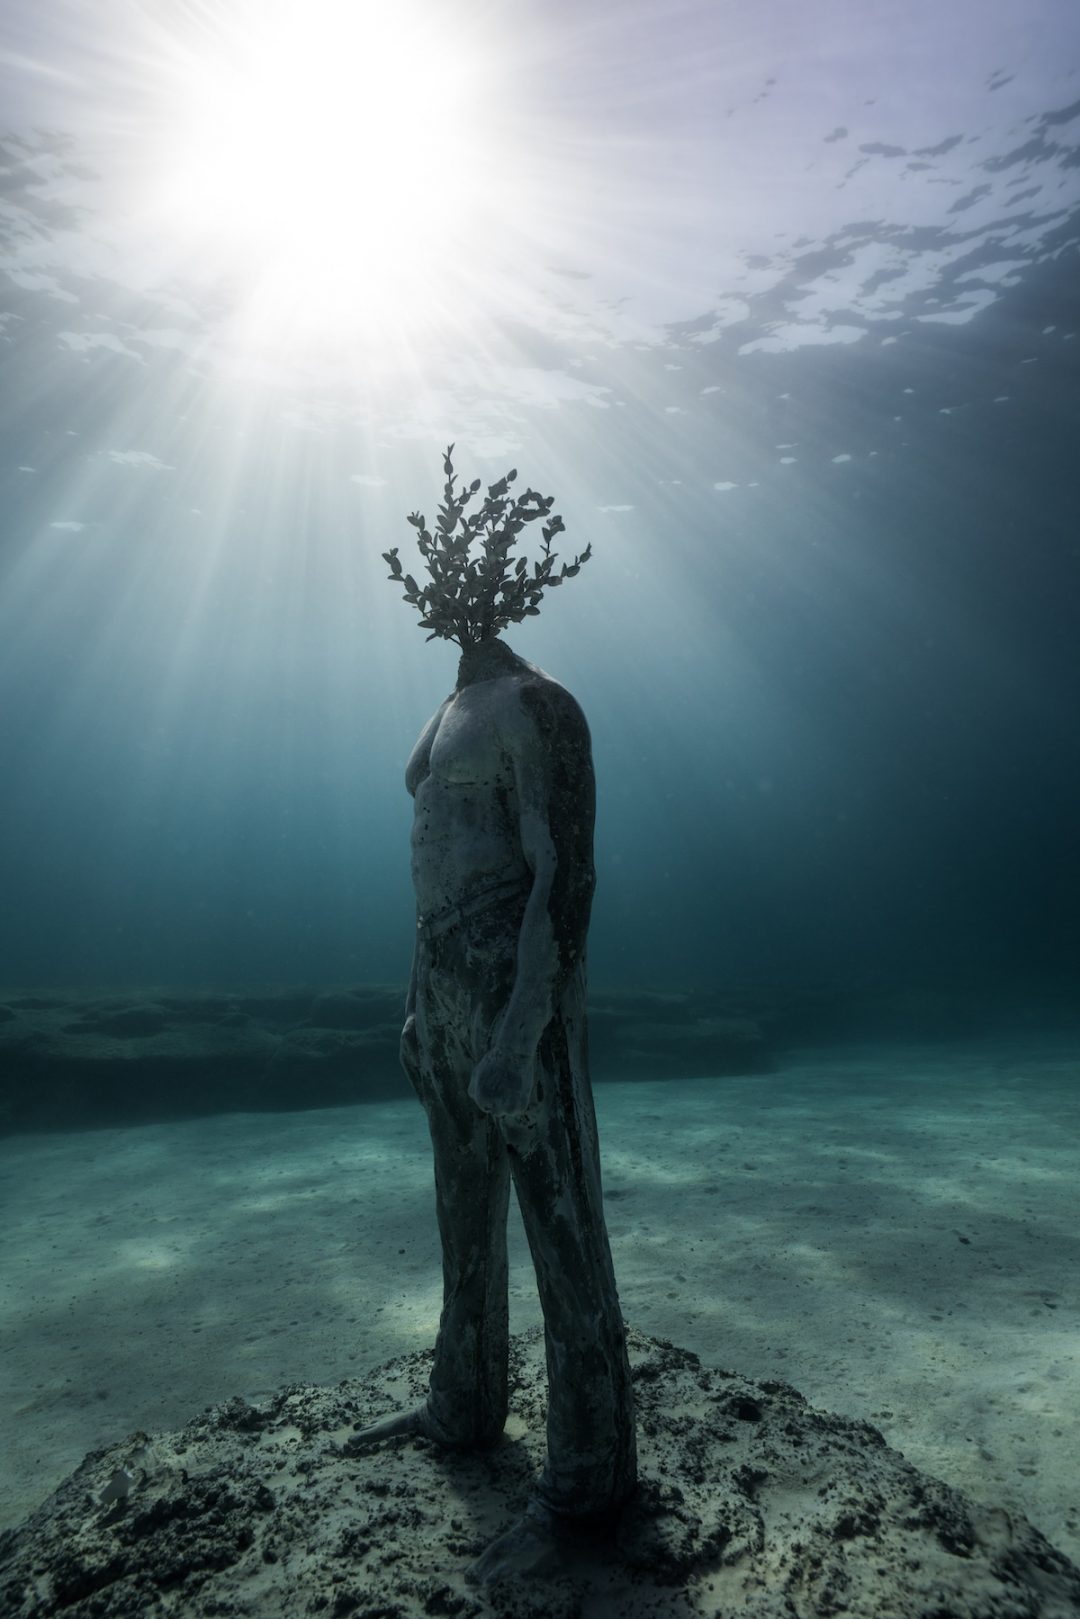 Una “foresta dei sogni”: lo spettacolare museo sottomarino sui fondali di Cipro